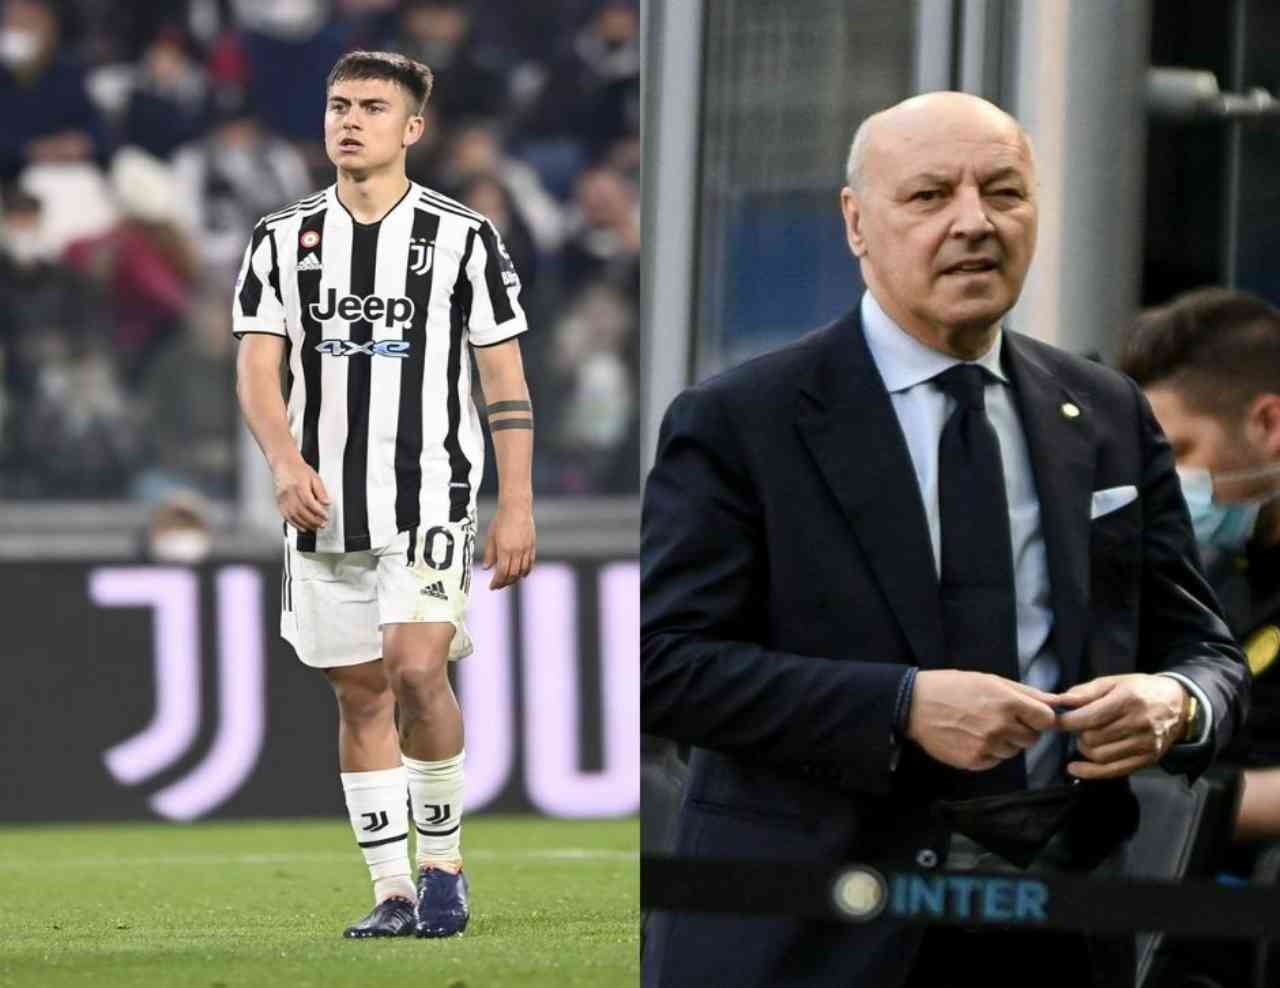 Calciomercato Inter, soldi e Mourinho: il Newcastle frega Marotta per Dybala